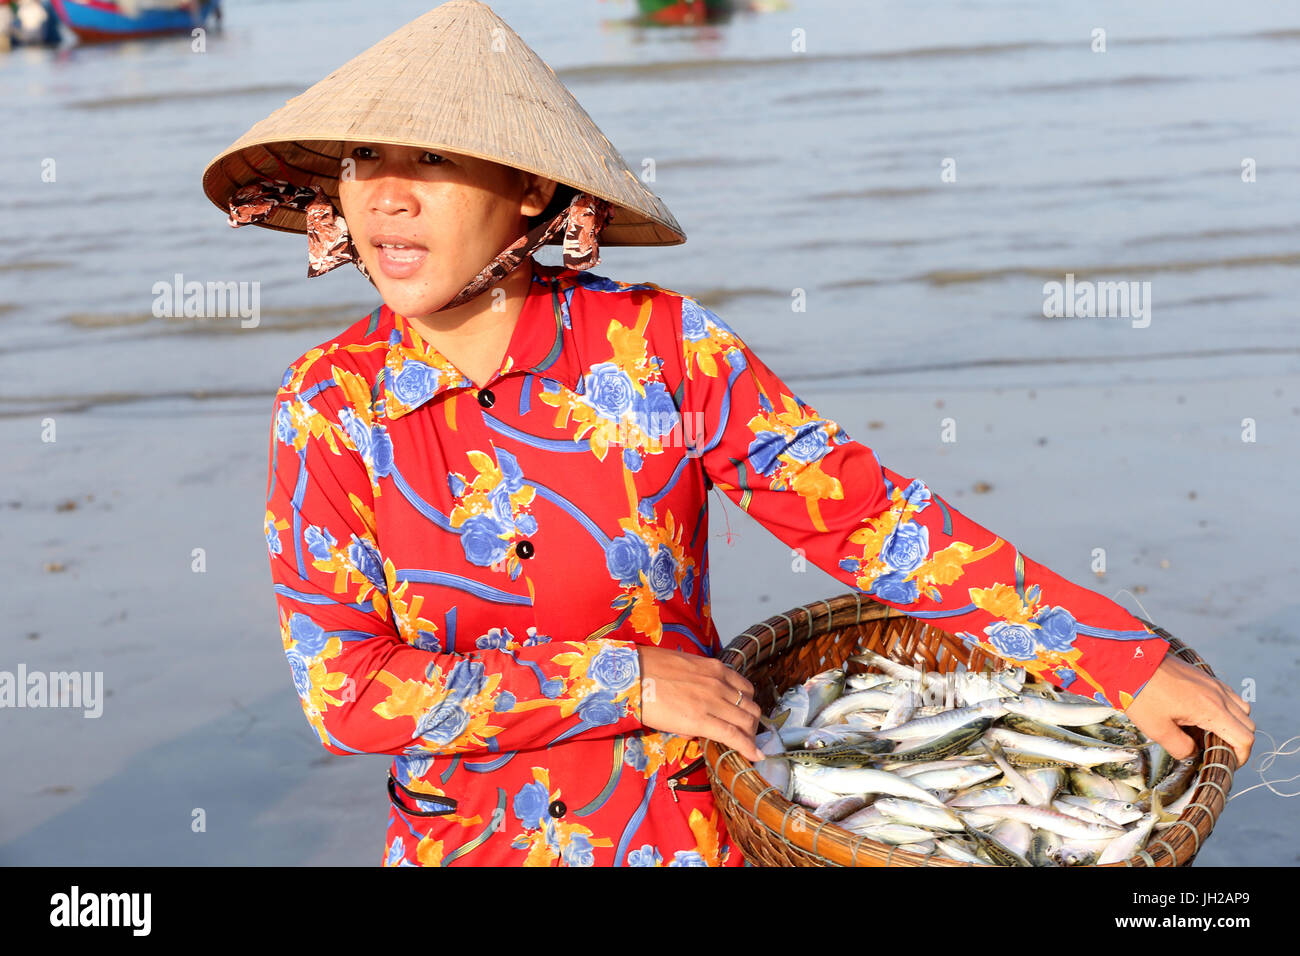 Vung Tau beach. Fishing boats. Woman sorting fishing catch.  Vietnam. Stock Photo